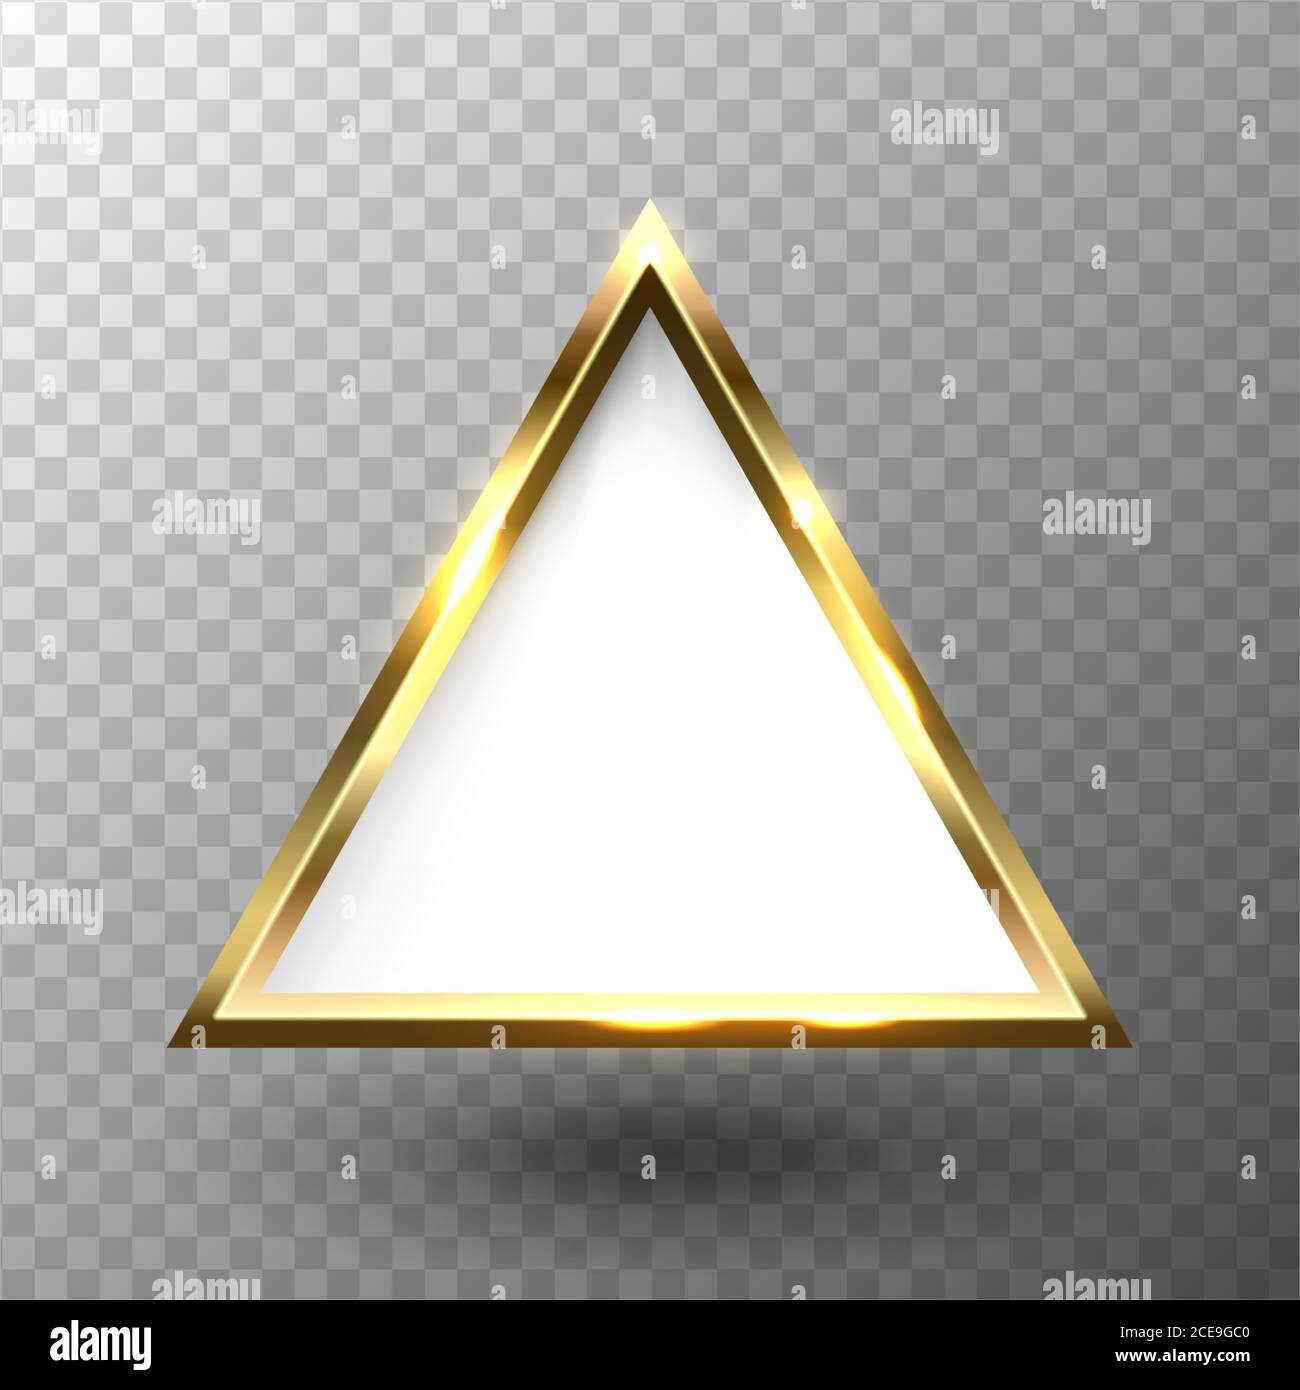 Cornice triangolare dorata astratta con spazio vuoto per il testo, su sfondo trasparente, illustrazione vettoriale. Illustrazione Vettoriale